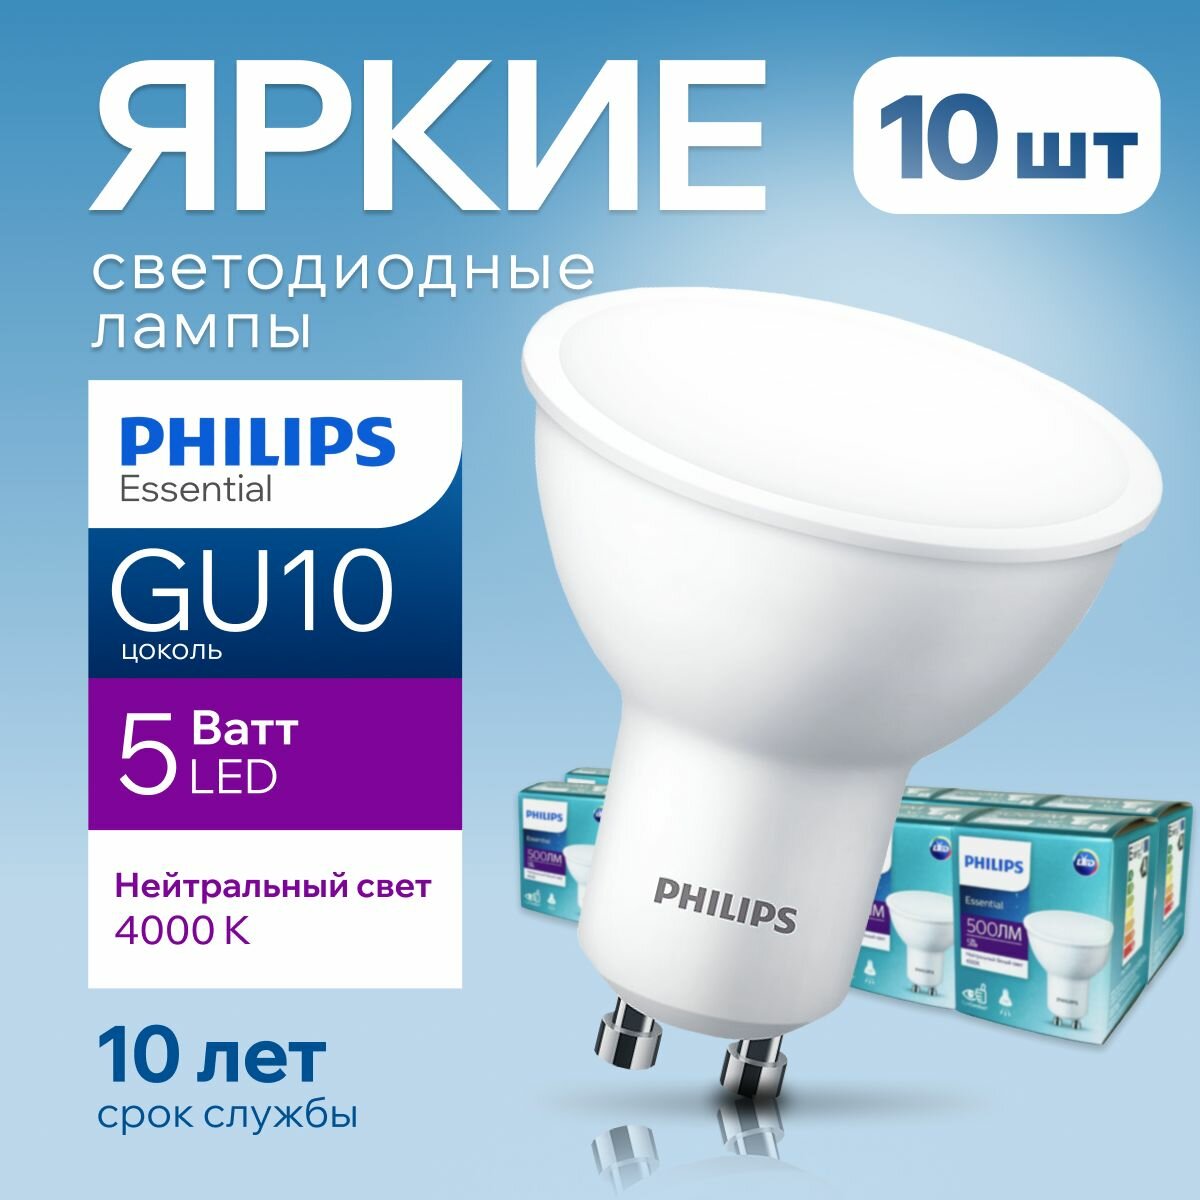 Лампочка светодиодная GU10 Philips 5Вт белый свет, PAR16 спот 4000К Essential LED 840, 5W, 500лм, набор 10шт